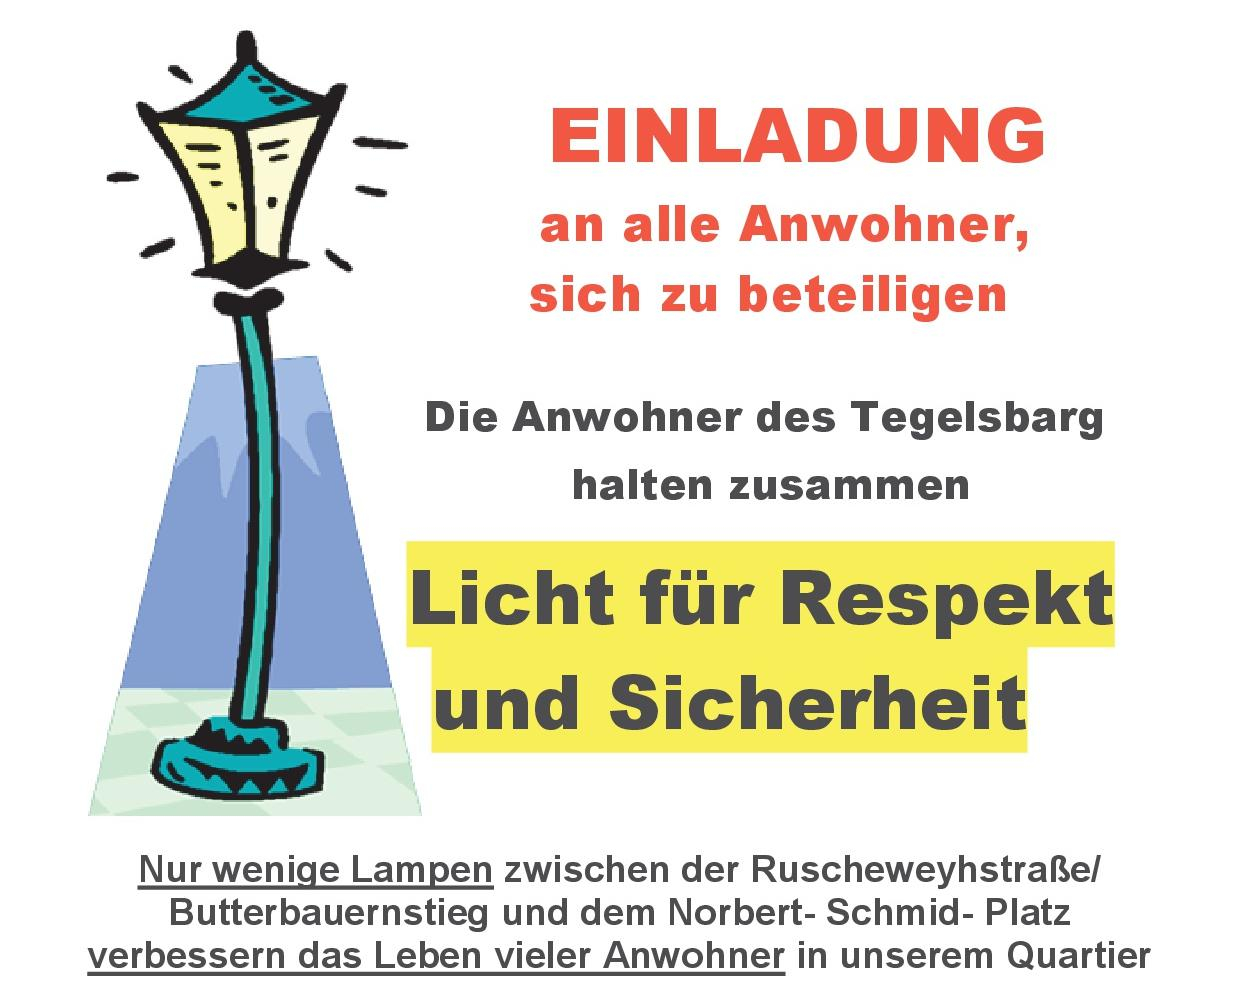 Beleuchtung Anwohner info Din AL fff 001